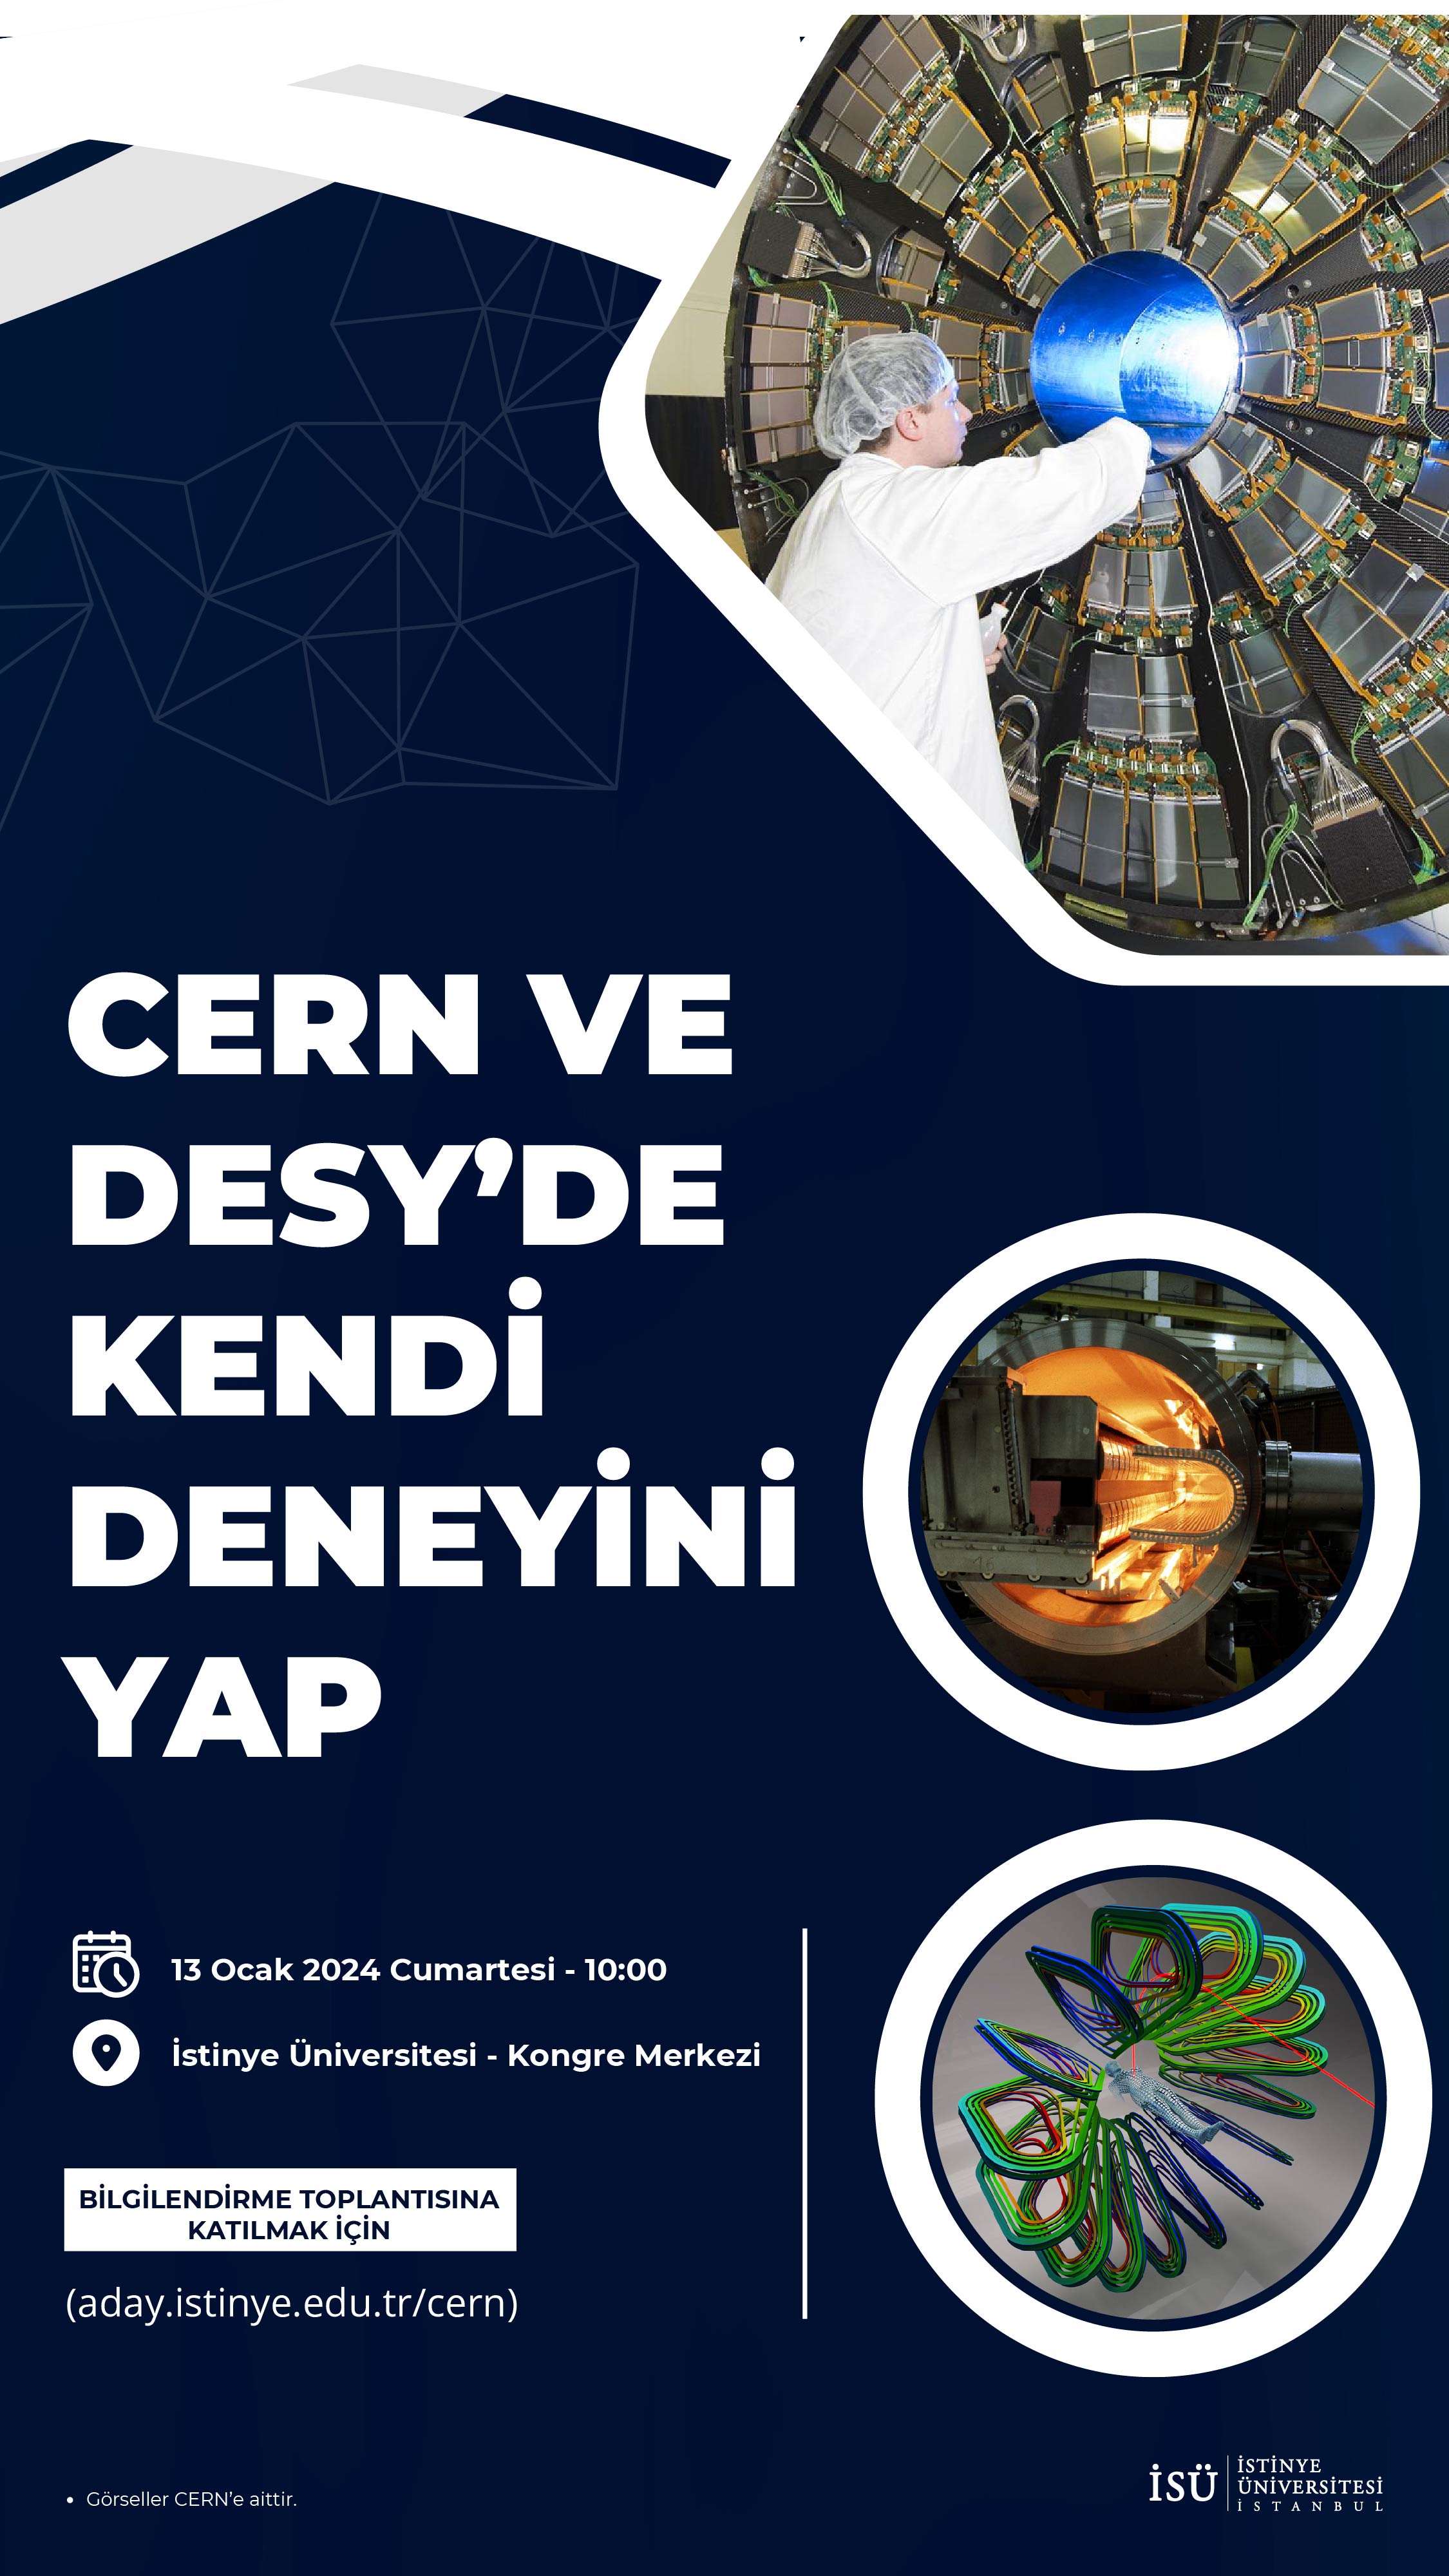 CERN VE DESEY'DE KENDİ DENEYİNİ YAP